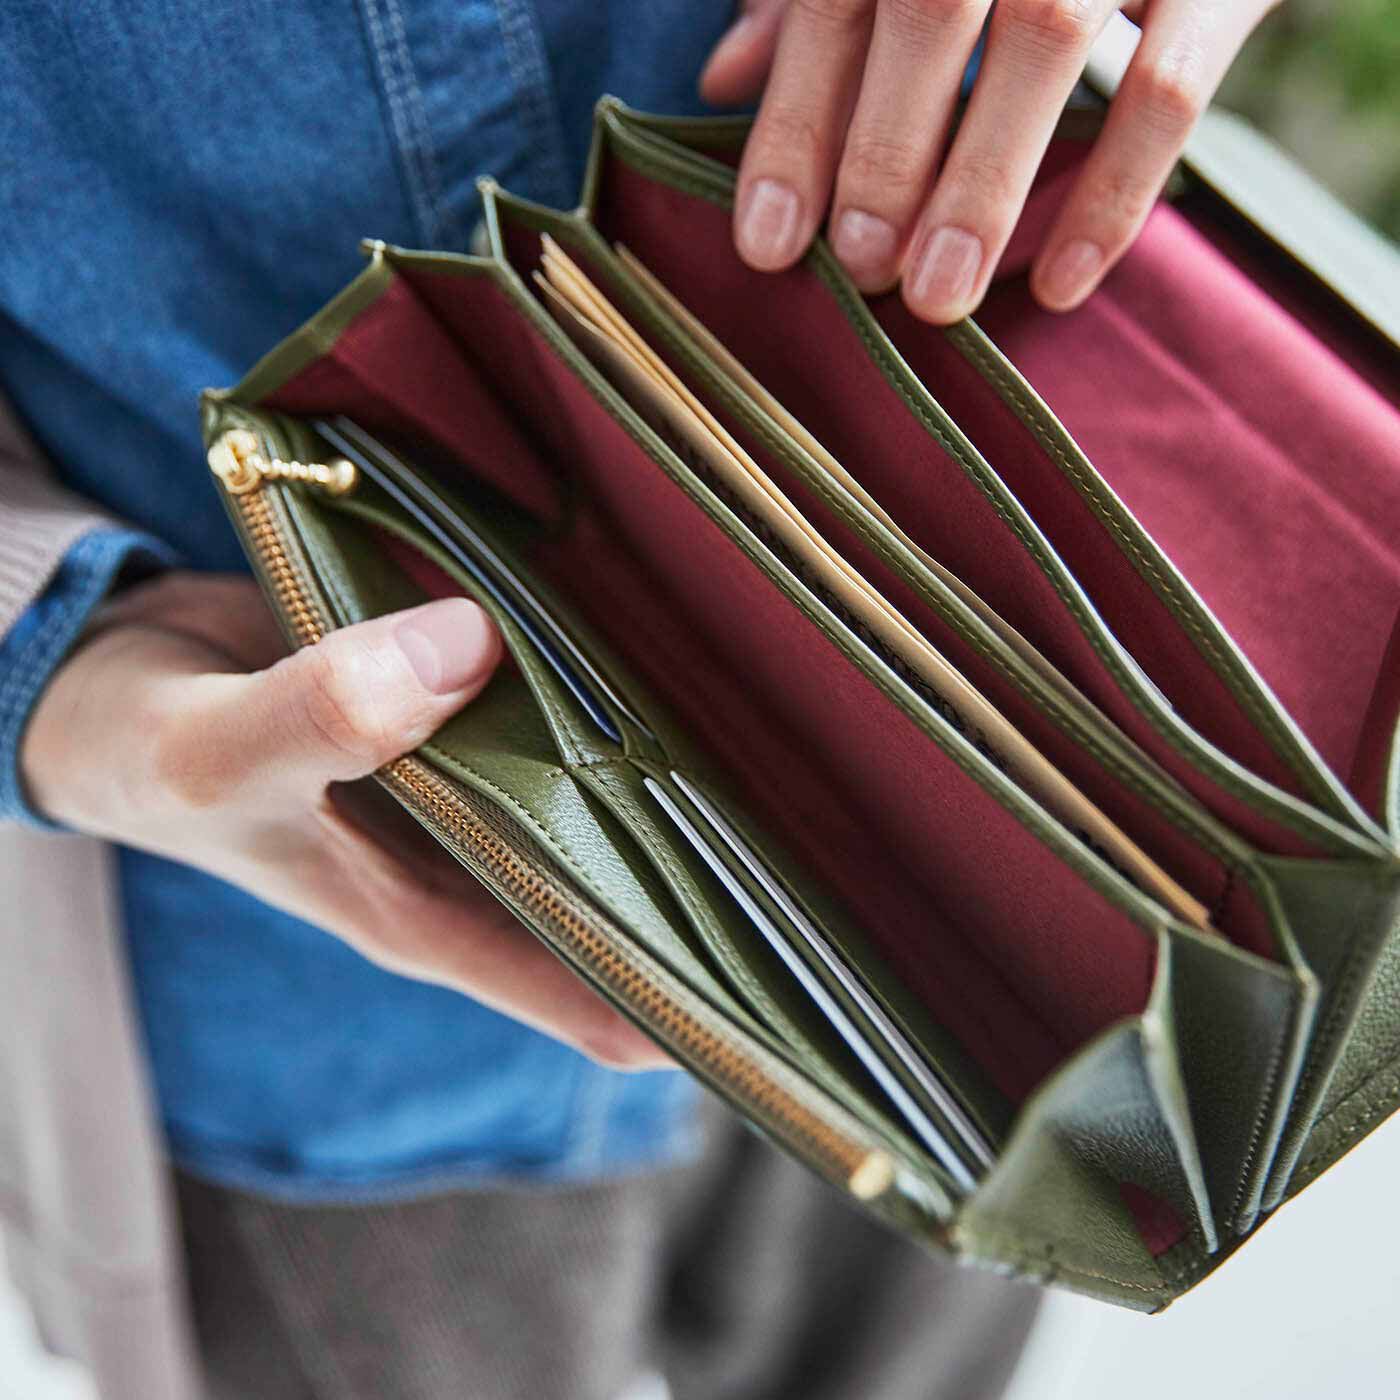 ＆Stories|財布職人と作った 職人本革のギャルソンウォレット〈オリーブ色〉|外国のレストランで、ギャルソンがテーブルで会計をするときのお財布を参考にしています。